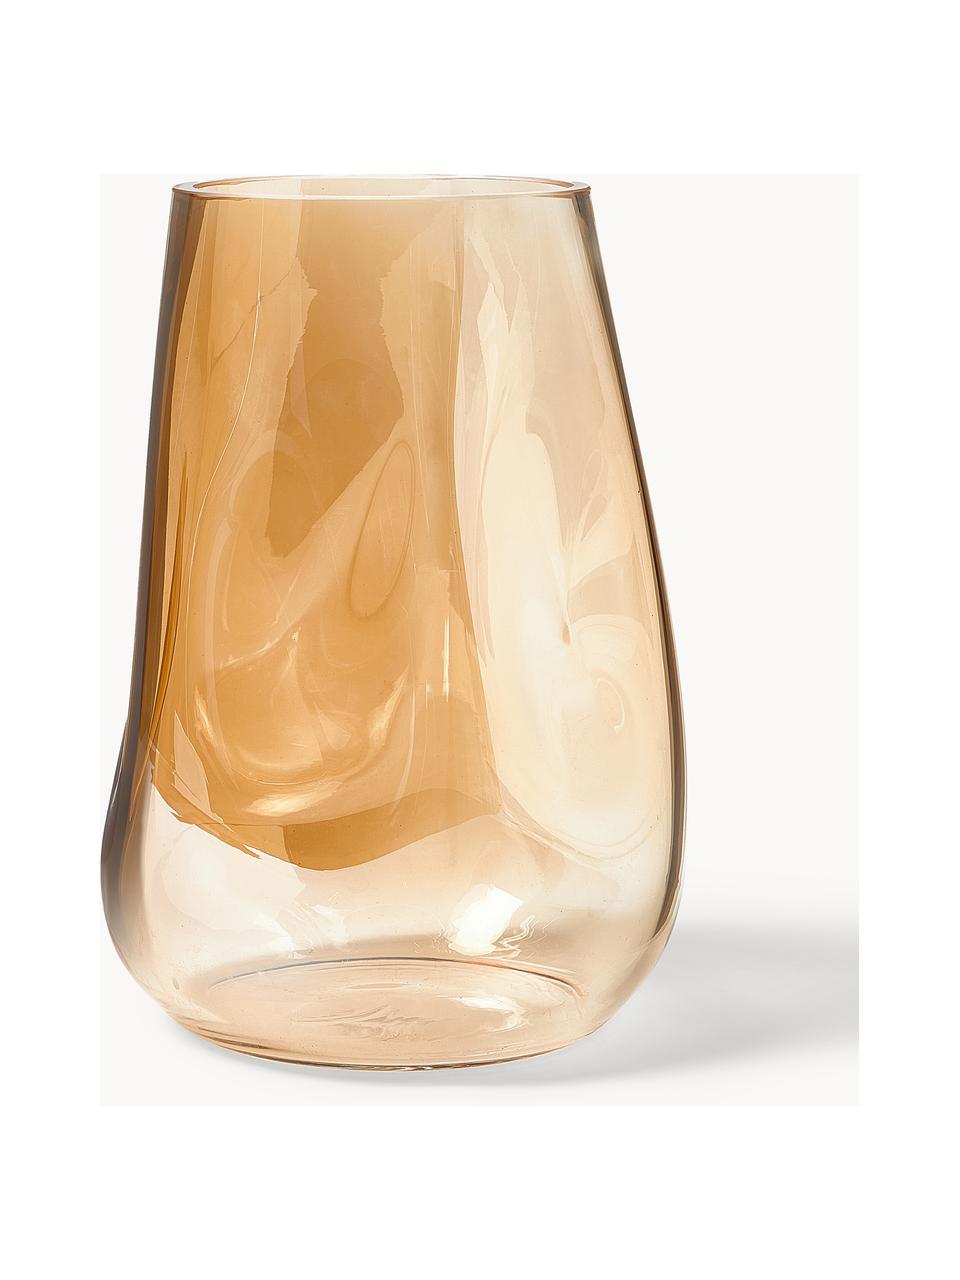 Kieliszek do białego wina ze szkła dmuchanego Ellery, 4 szt., Szkło, Transparentny, Ø 9 x W 21 cm, 400 ml